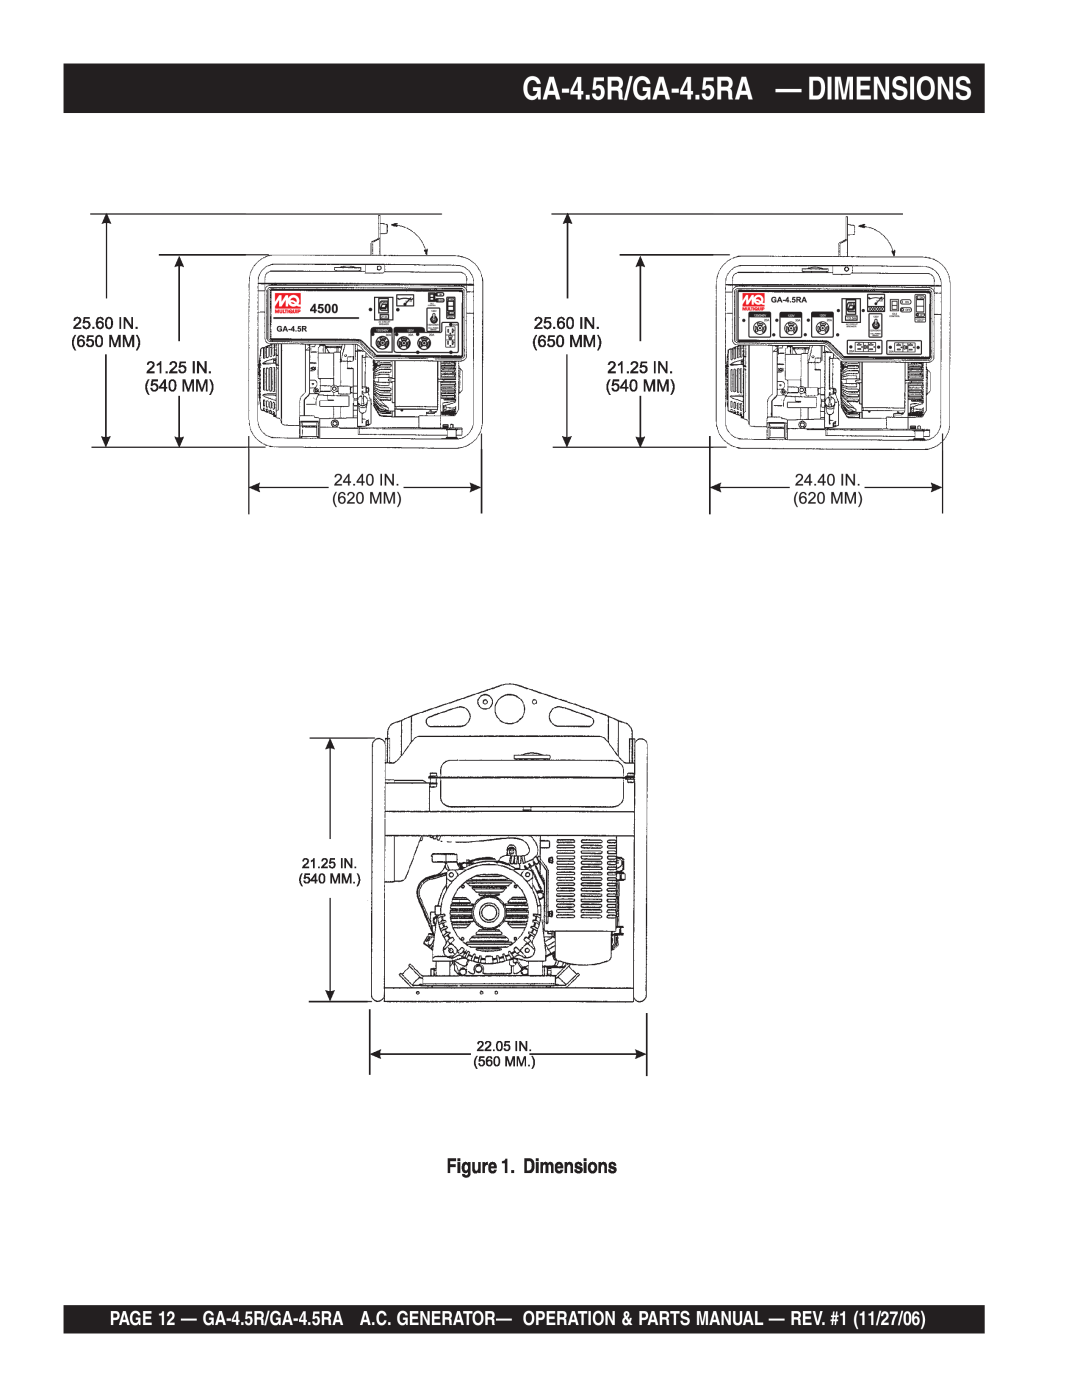 Multiquip GA4.5RA manual GA-4.5R/GA-4.5RA - DIMENSIONS, Dimensions 